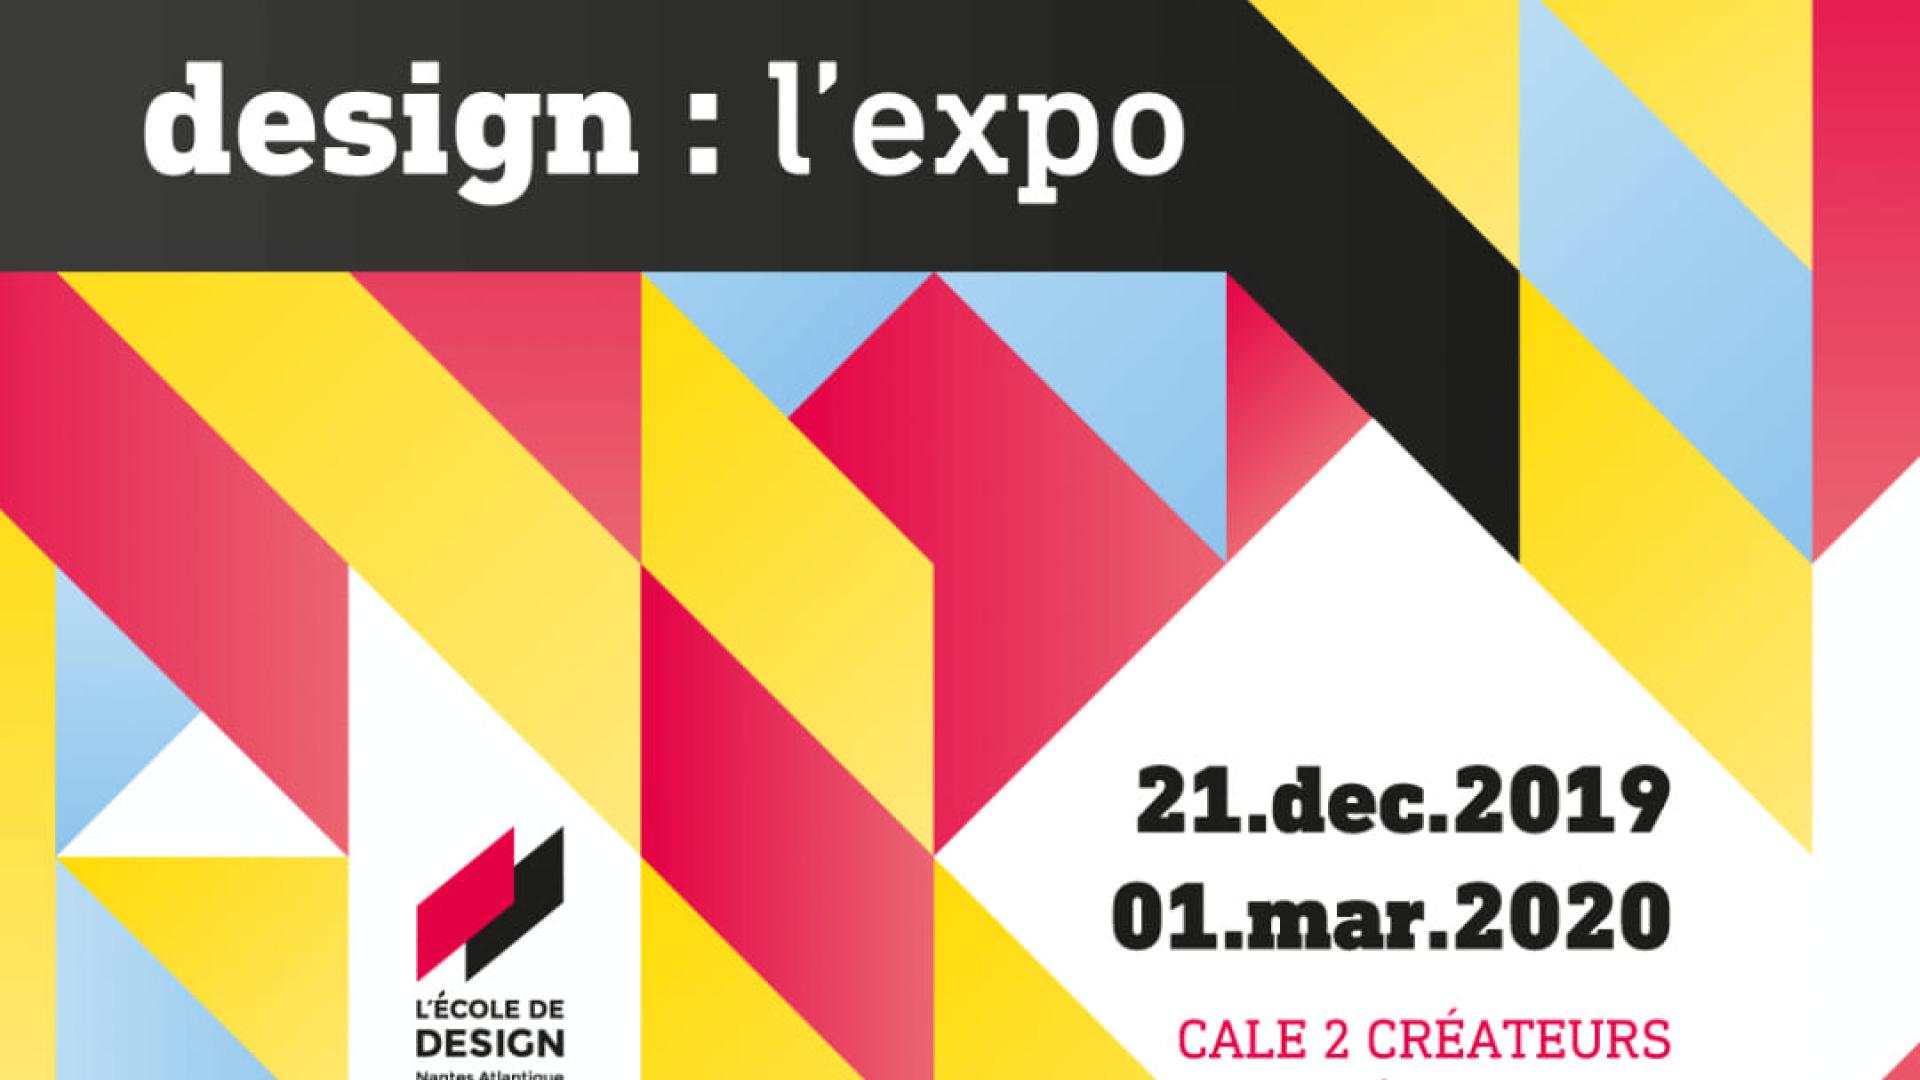 Affiche design l'expo 2019 by l'Ecole de design de Nantes Atlantique